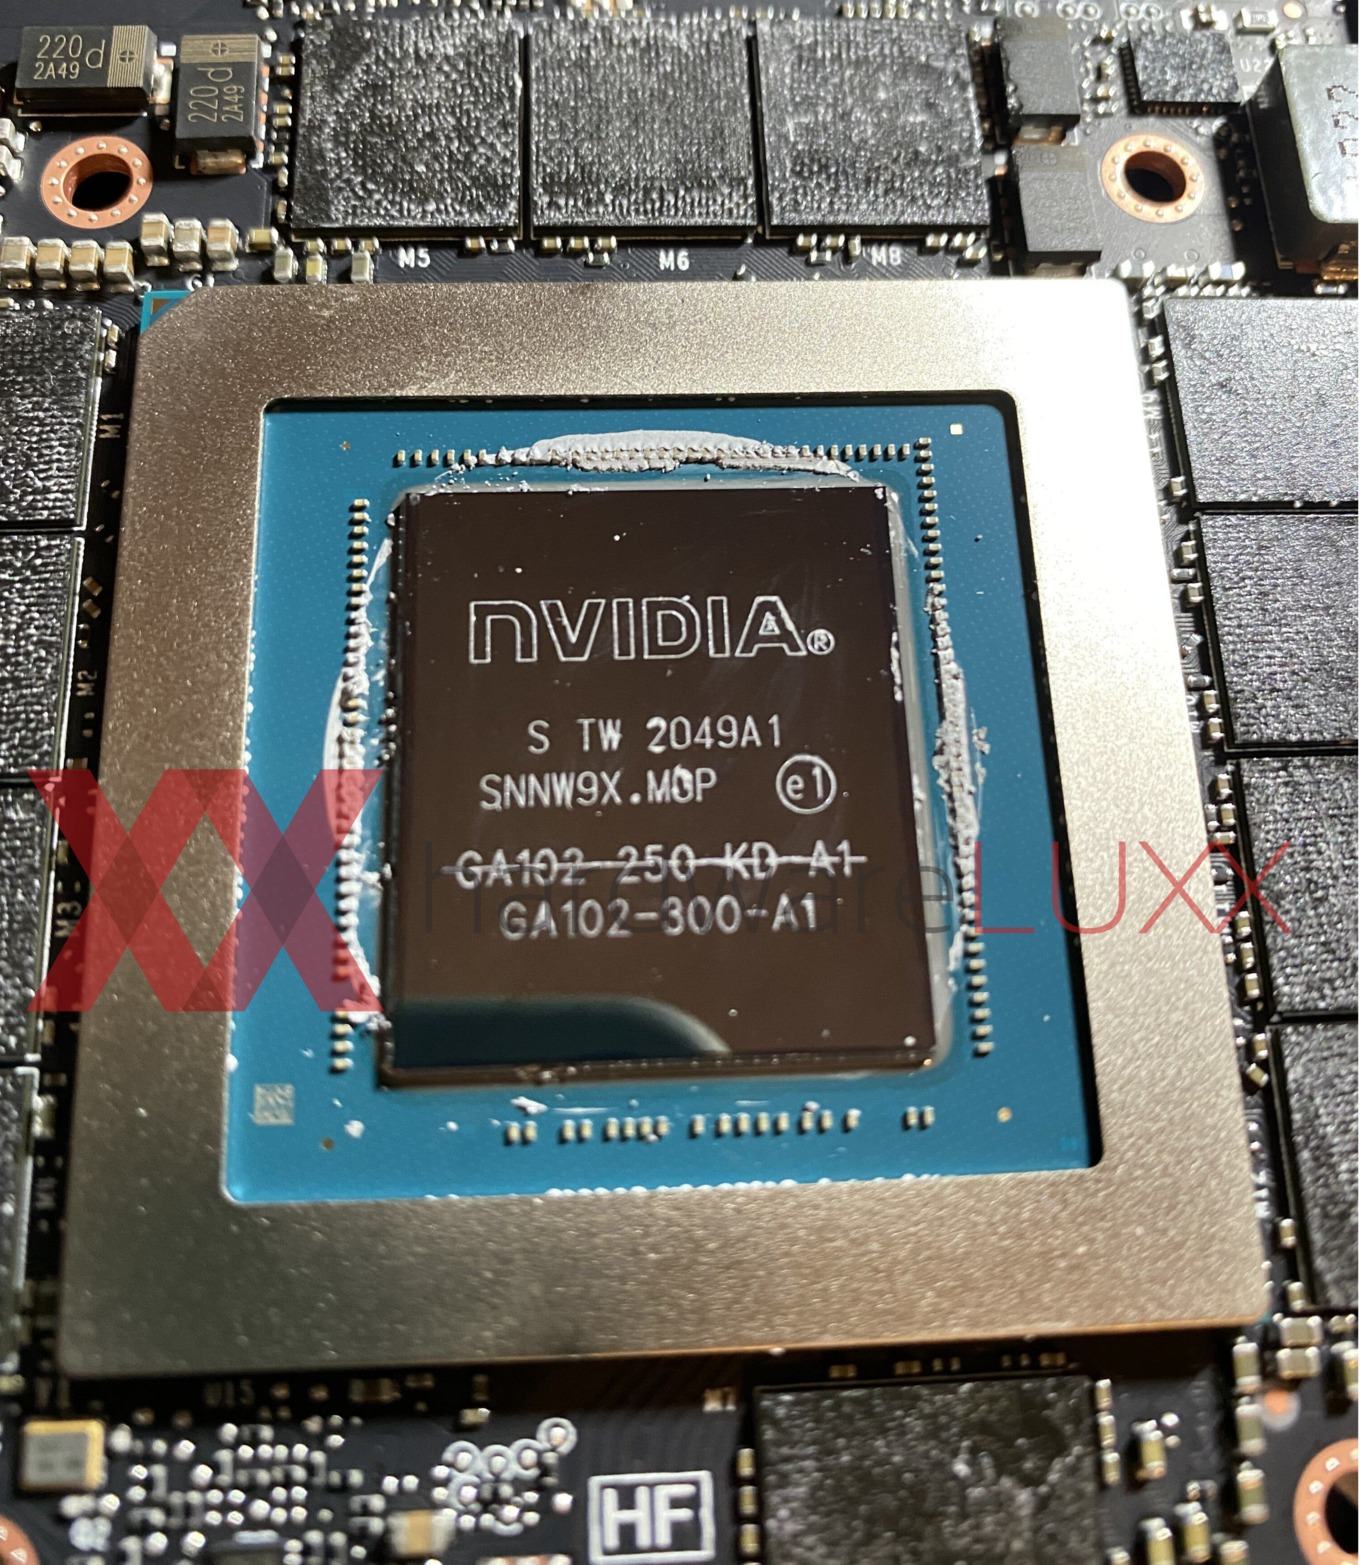 Media asset in full size related to 3dfxzone.it news item entitled as follows: La GPU della GeForce RTX 3080 Ti utilizzata anche per alcune RTX 3090 e RTX 3080 | Image Name: news31898_GPU-NVIDIA-GA102-250-A1_1.jpg